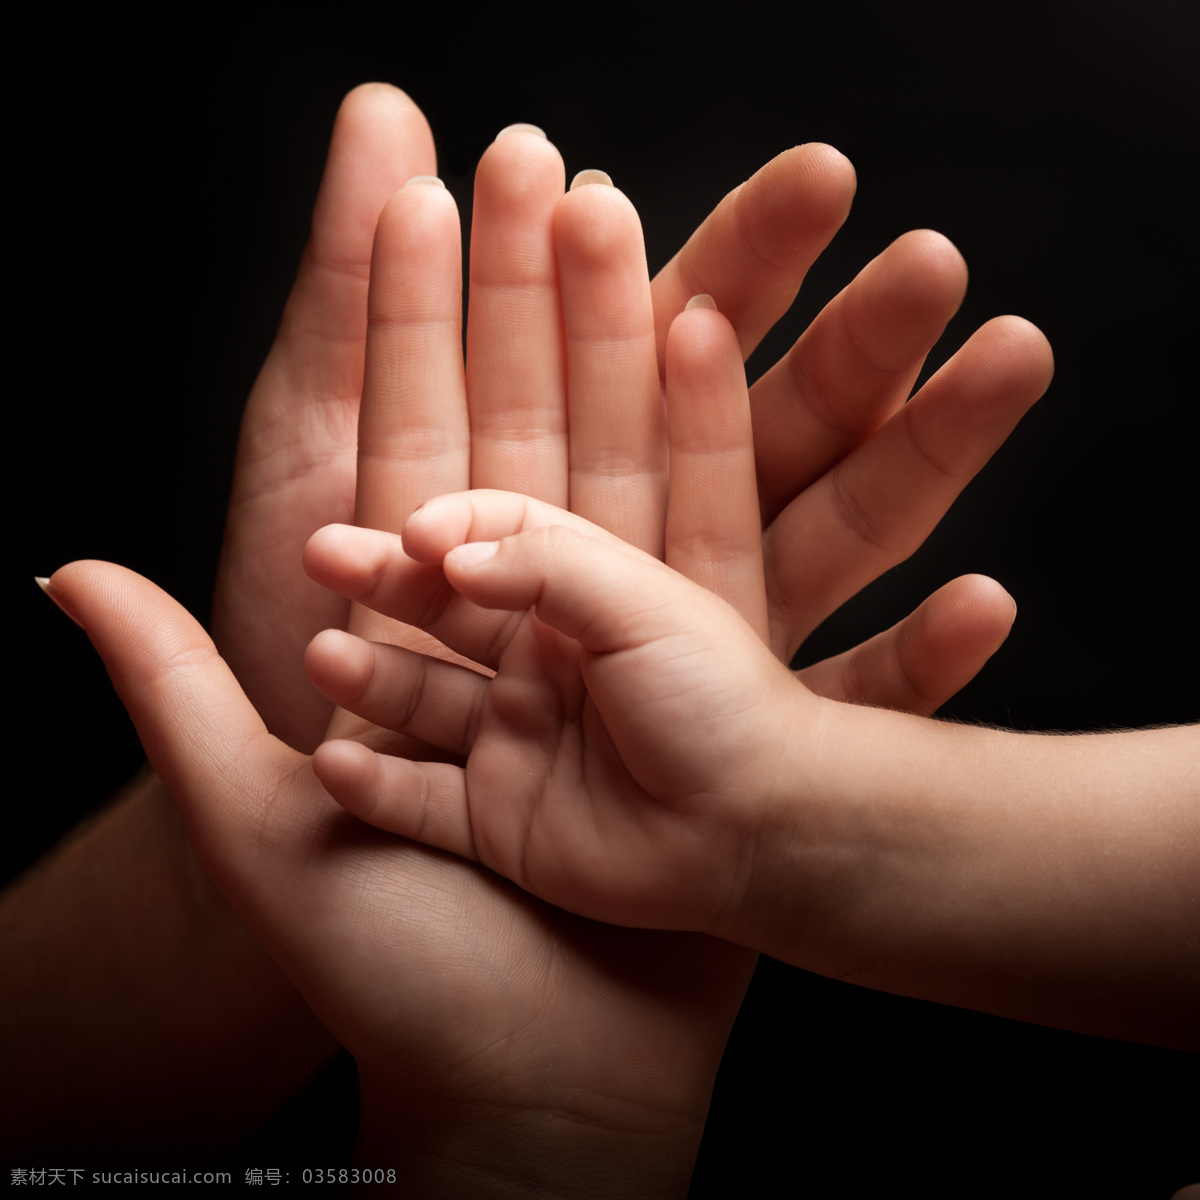 父母 手心 里 婴儿 手 父母手 大人手 婴儿手 手臂 手掌 手势 人体器官 动作姿势 人体器官图 人物图片